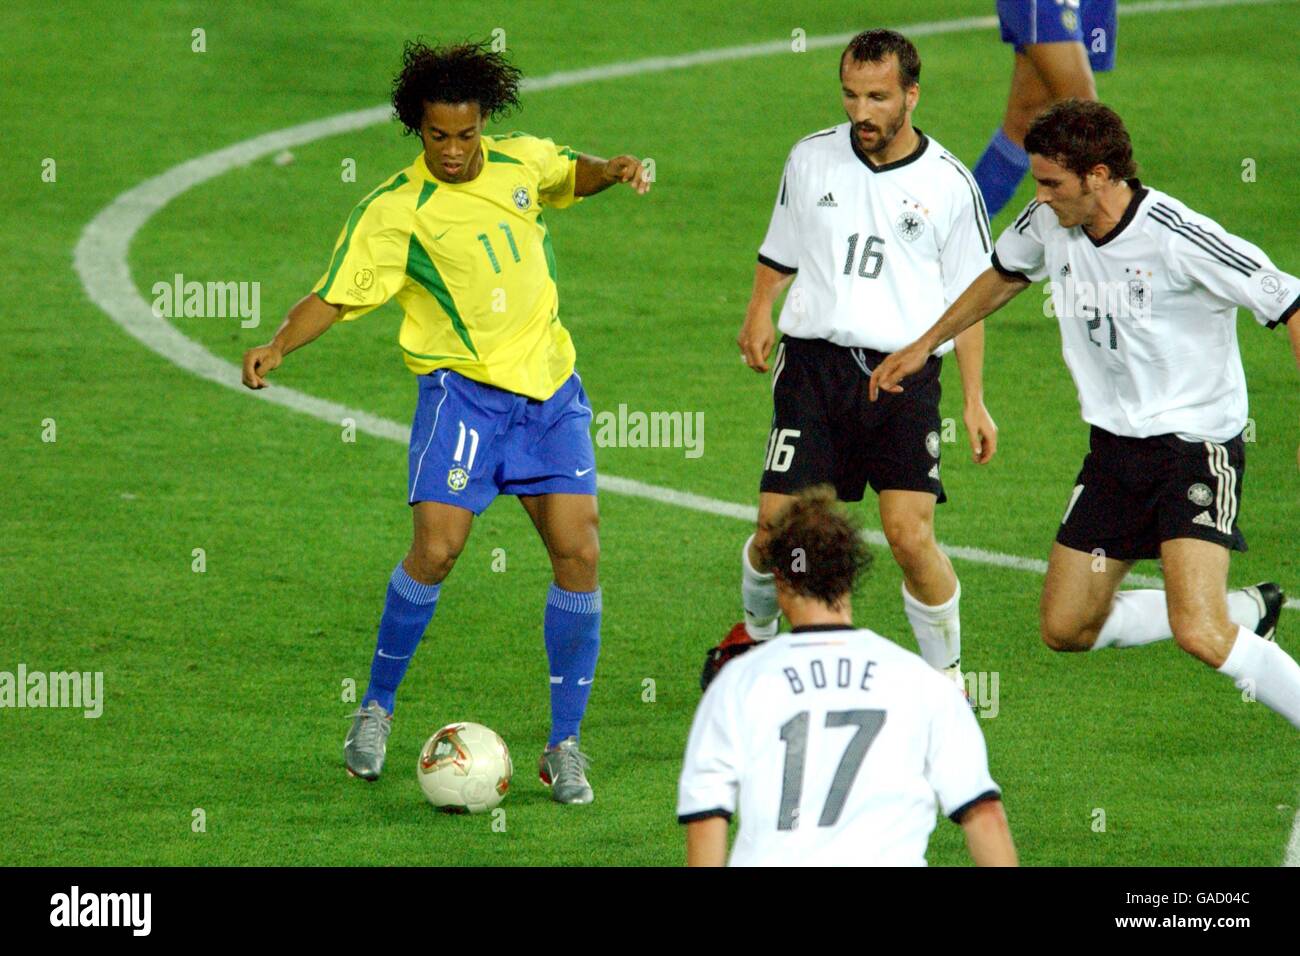 Fußball - FIFA World Cup 2002 - Finale - Deutschland / Brasilien  Stockfotografie - Alamy